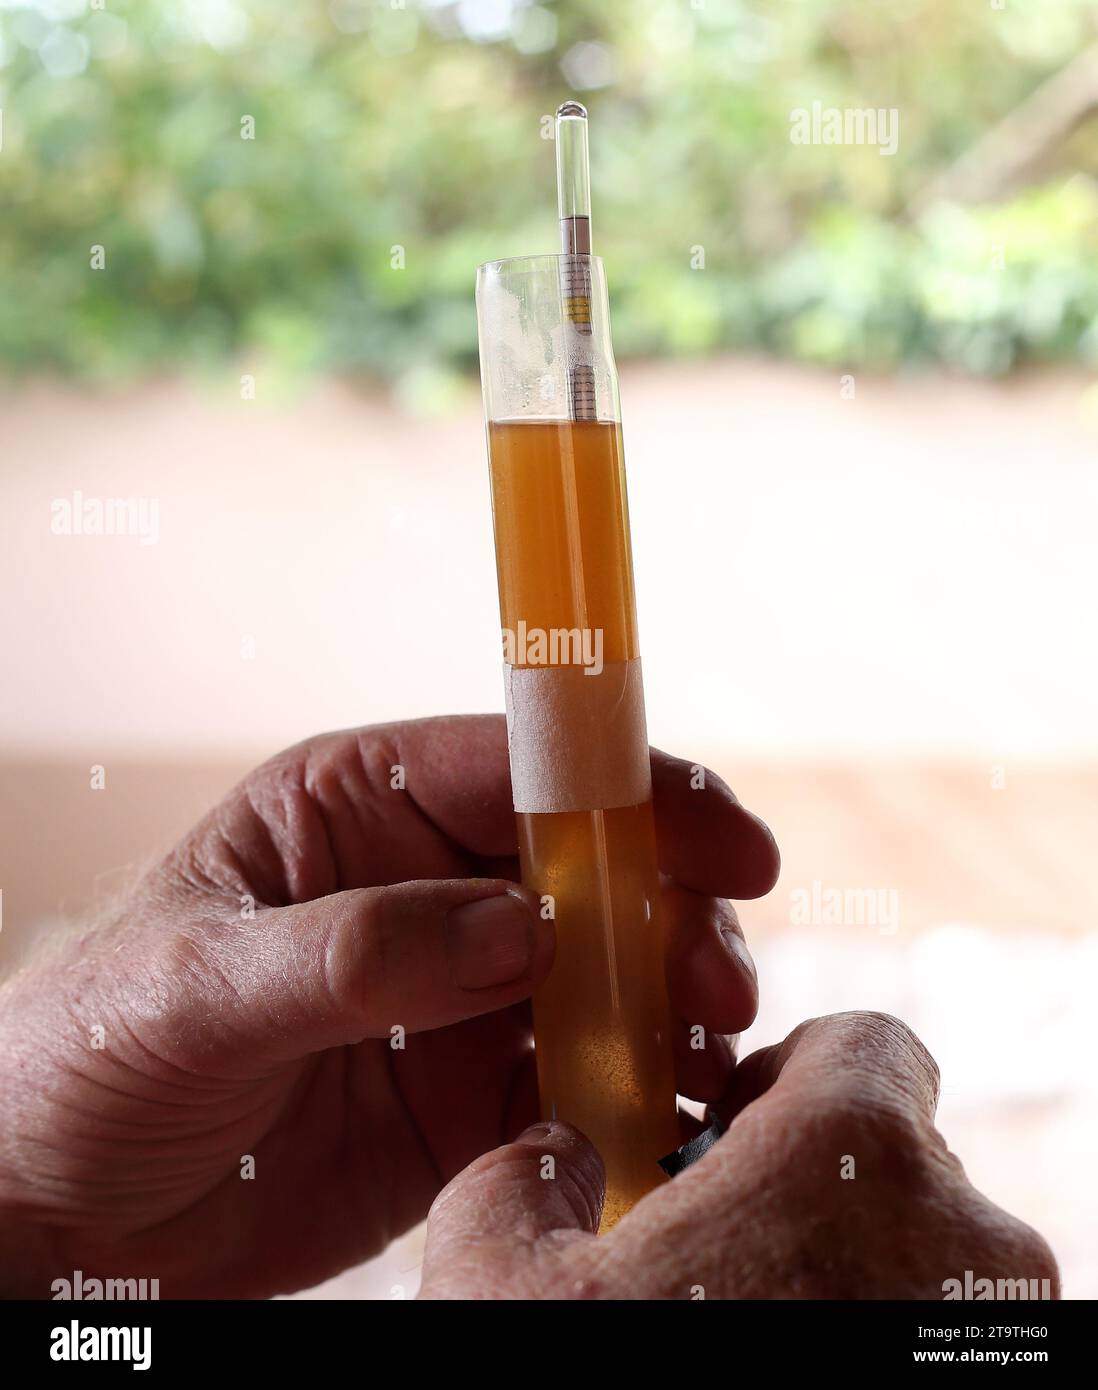 Messung des Alkoholgehalts mit einem Hydrometer in einer Glasröhre Bier. Stockfoto